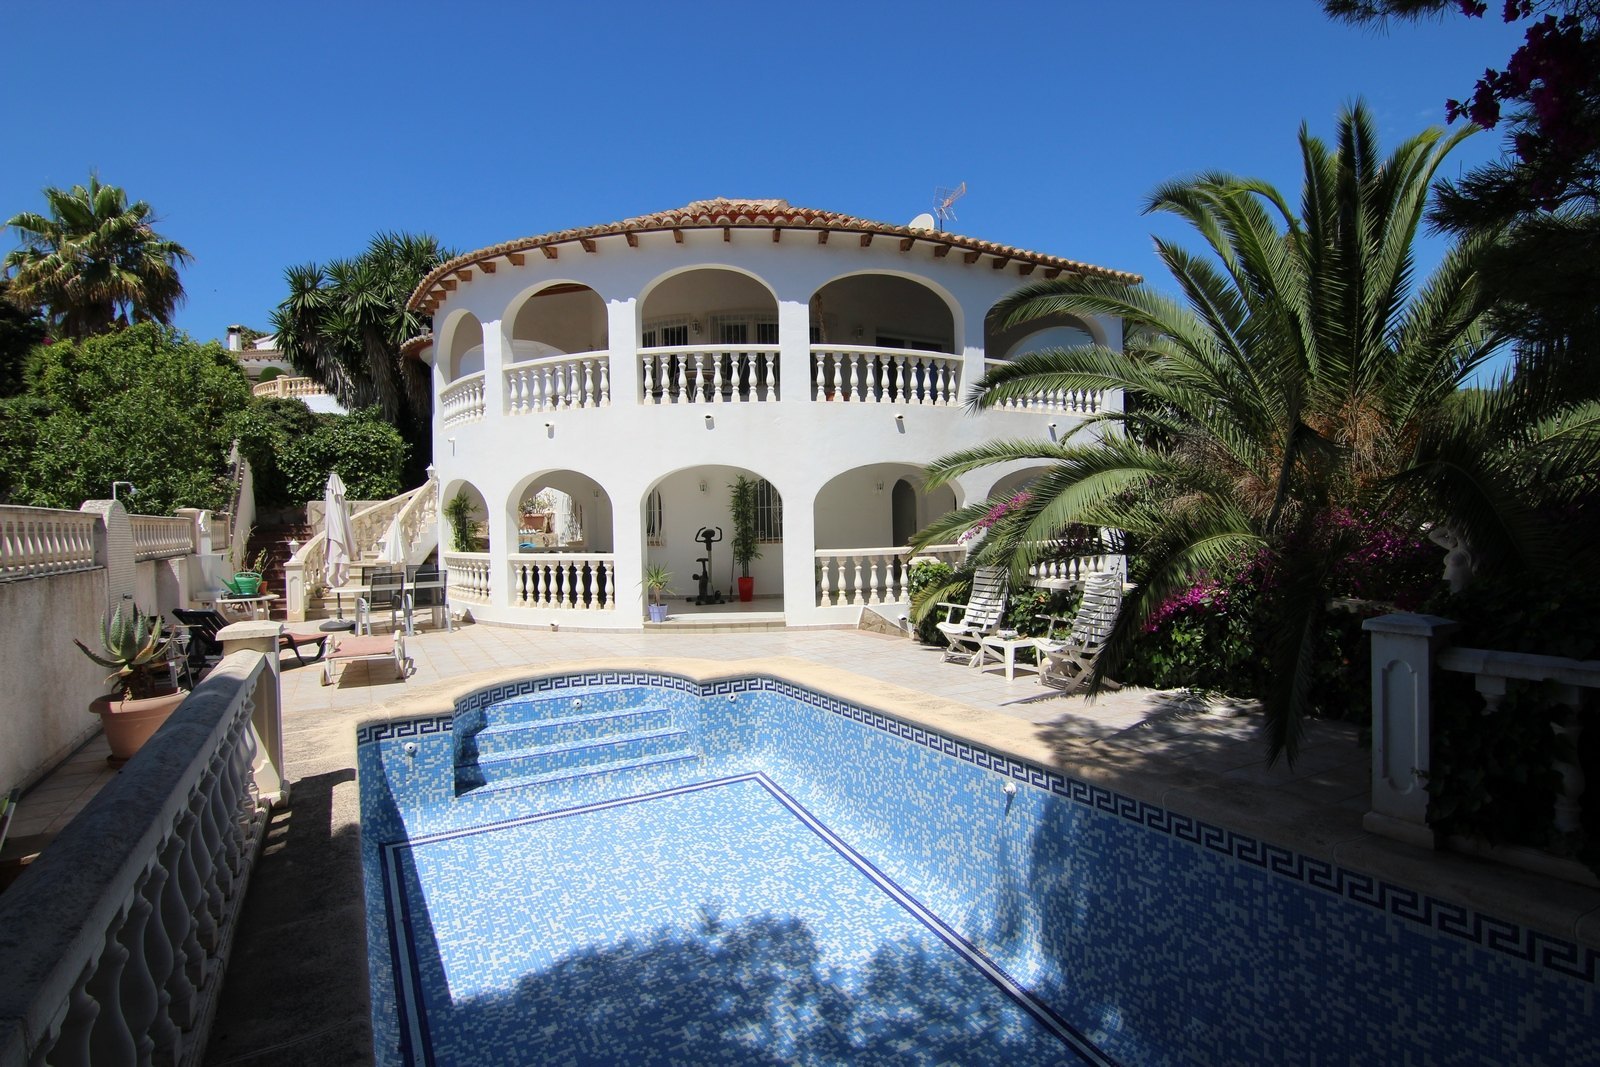 Villa te koop met zwembad in de buurt van het strand en Golf.